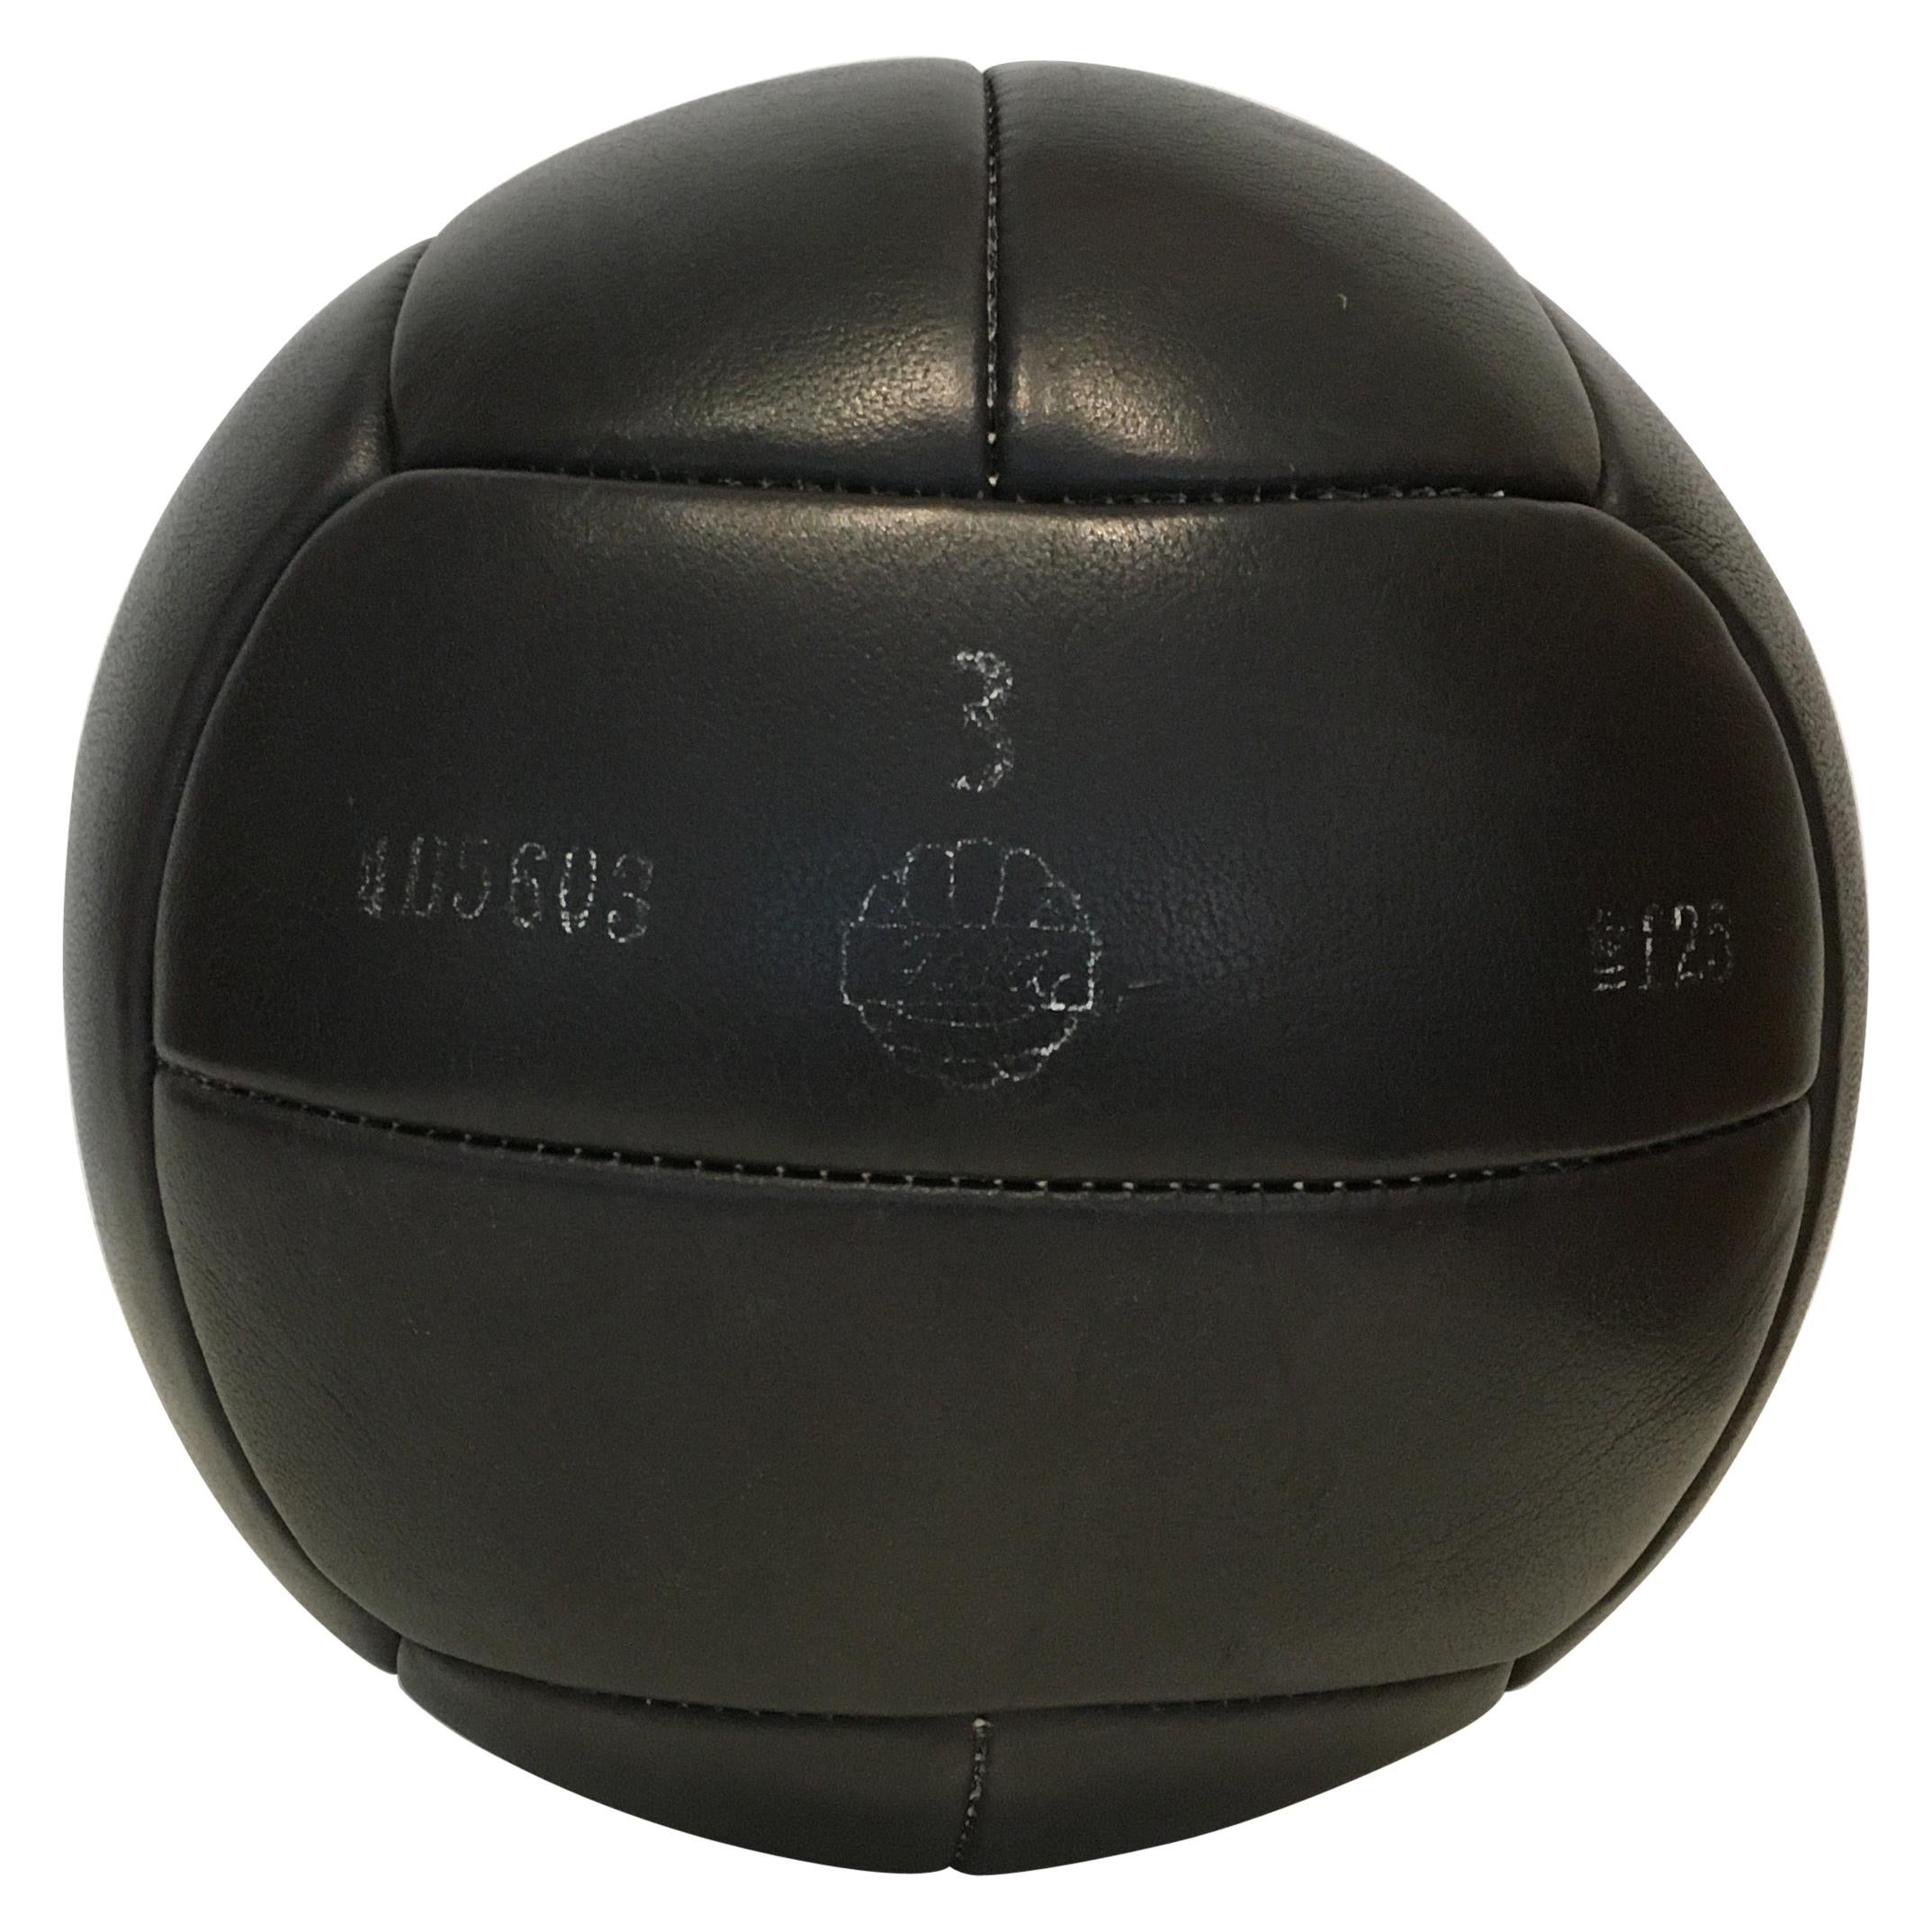 Vintage Black Leather Medicine Ball, 3kg, 1930s